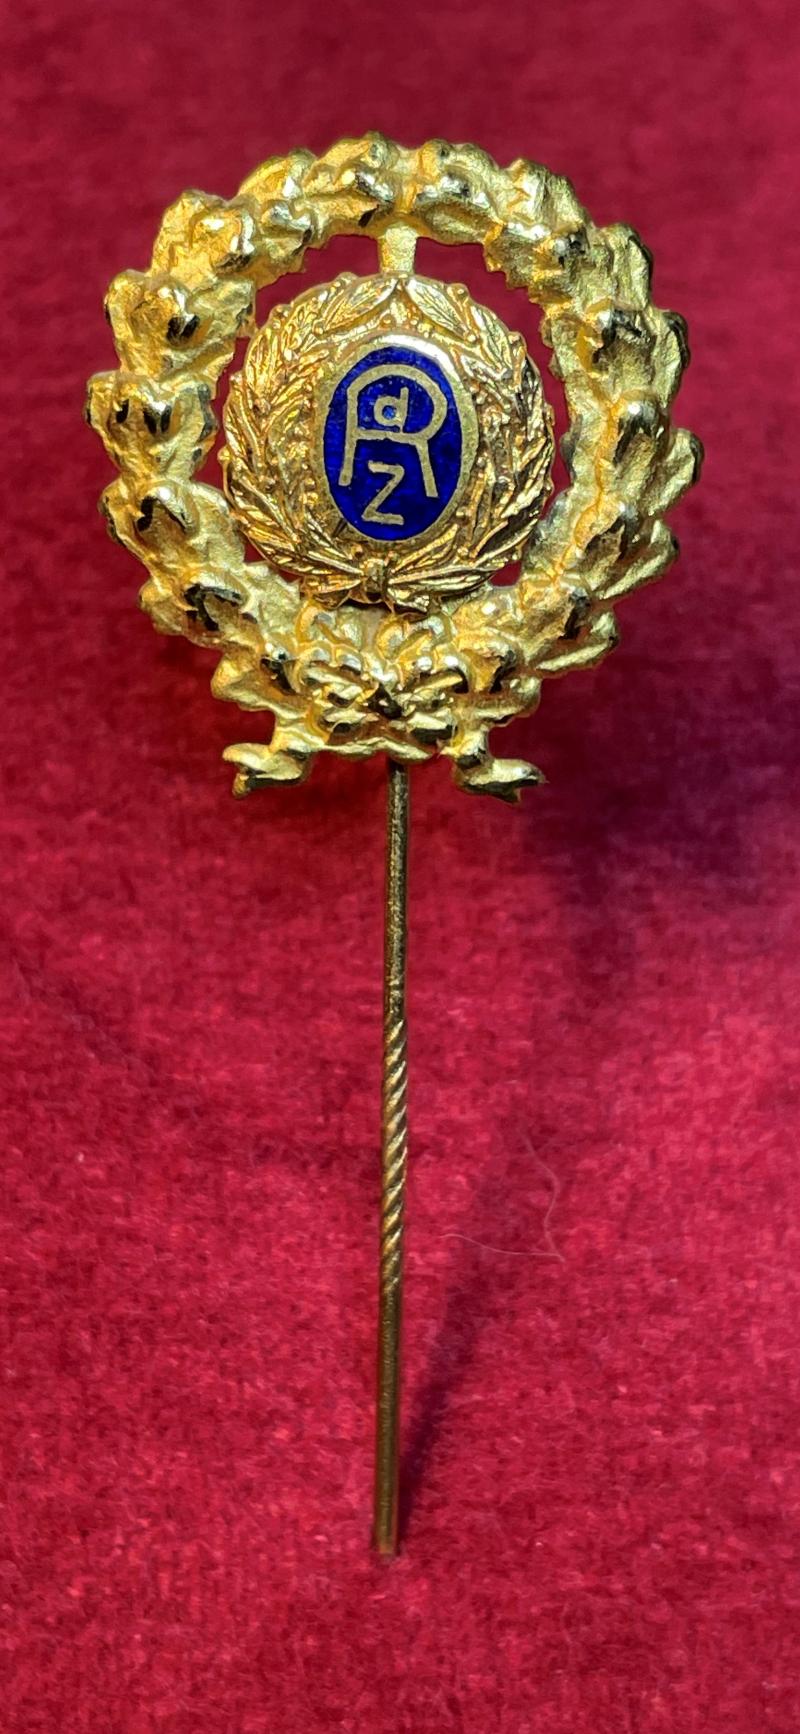 3rd Reich RdZ Goldene Ehrennadel